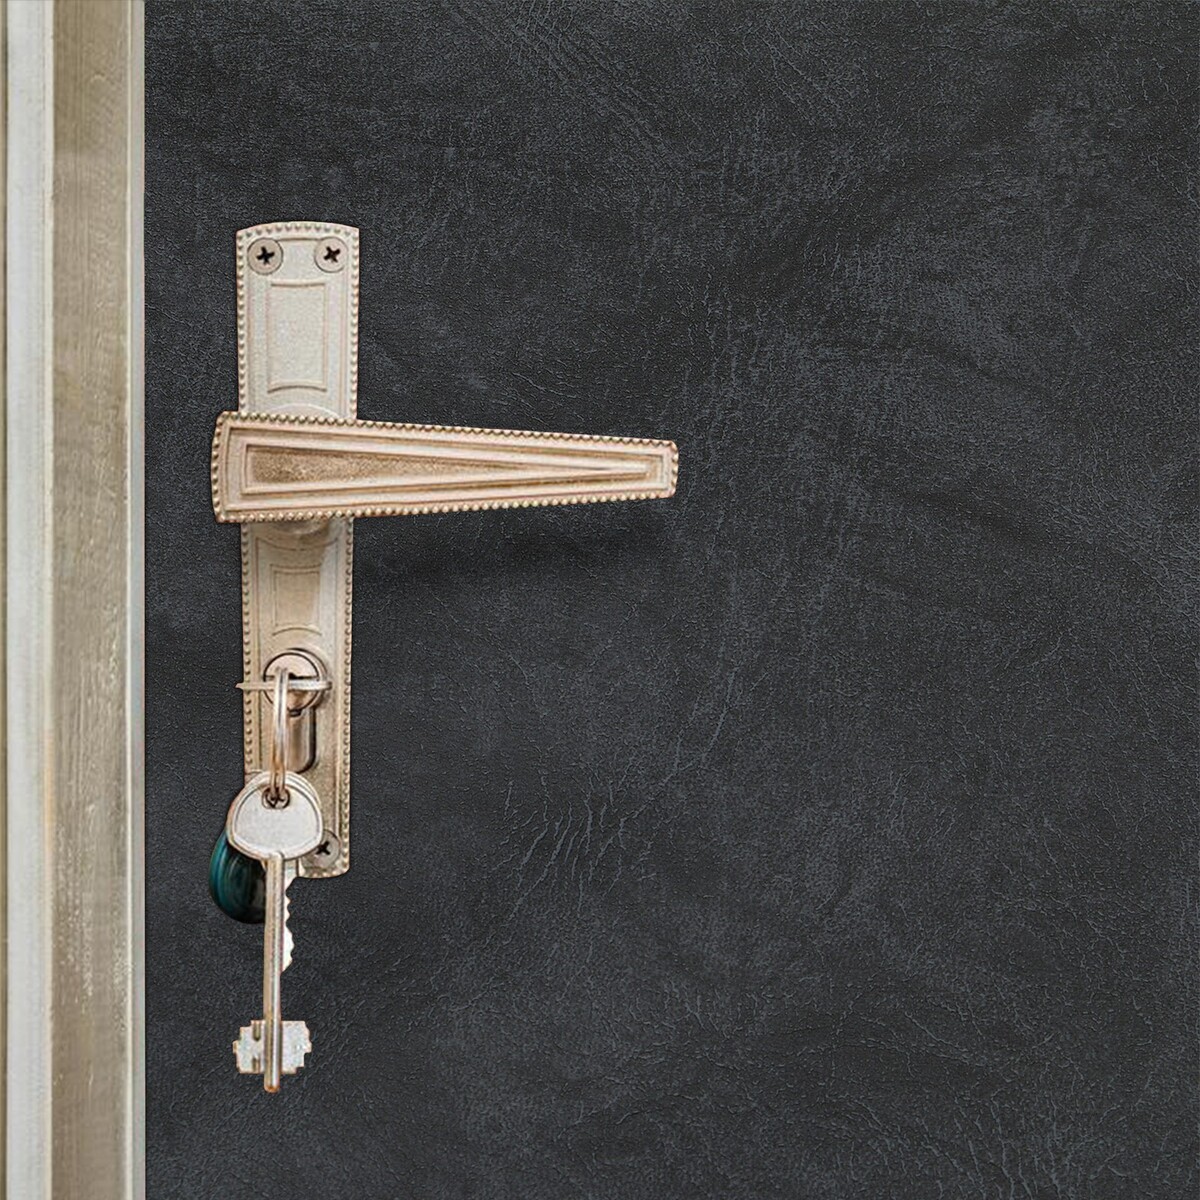 Комплект для обивки дверей, 110 × 200 см: иск.кожа, ватин 5 мм, гвозди, струна, серый,